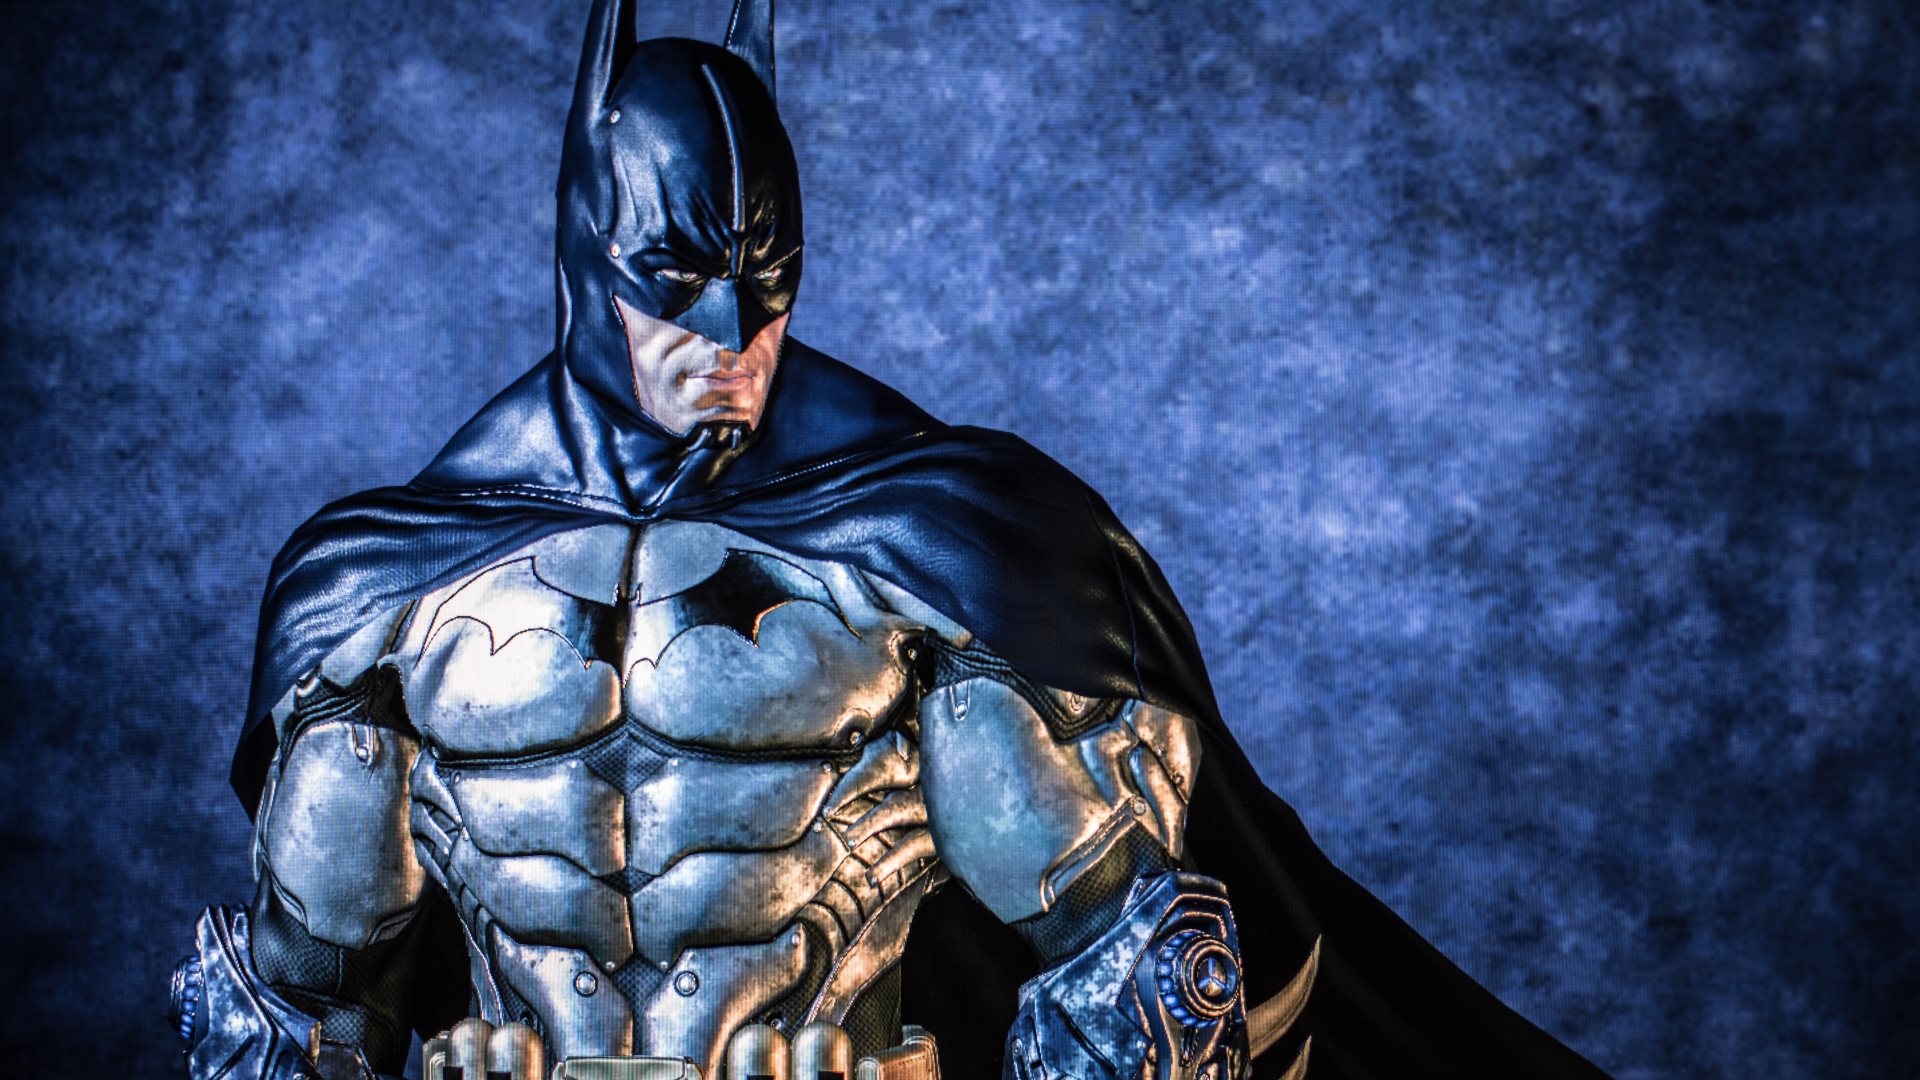 fondos de pantalla de batman,hombre murciélago,superhéroe,personaje de ficción,liga de la justicia,héroe